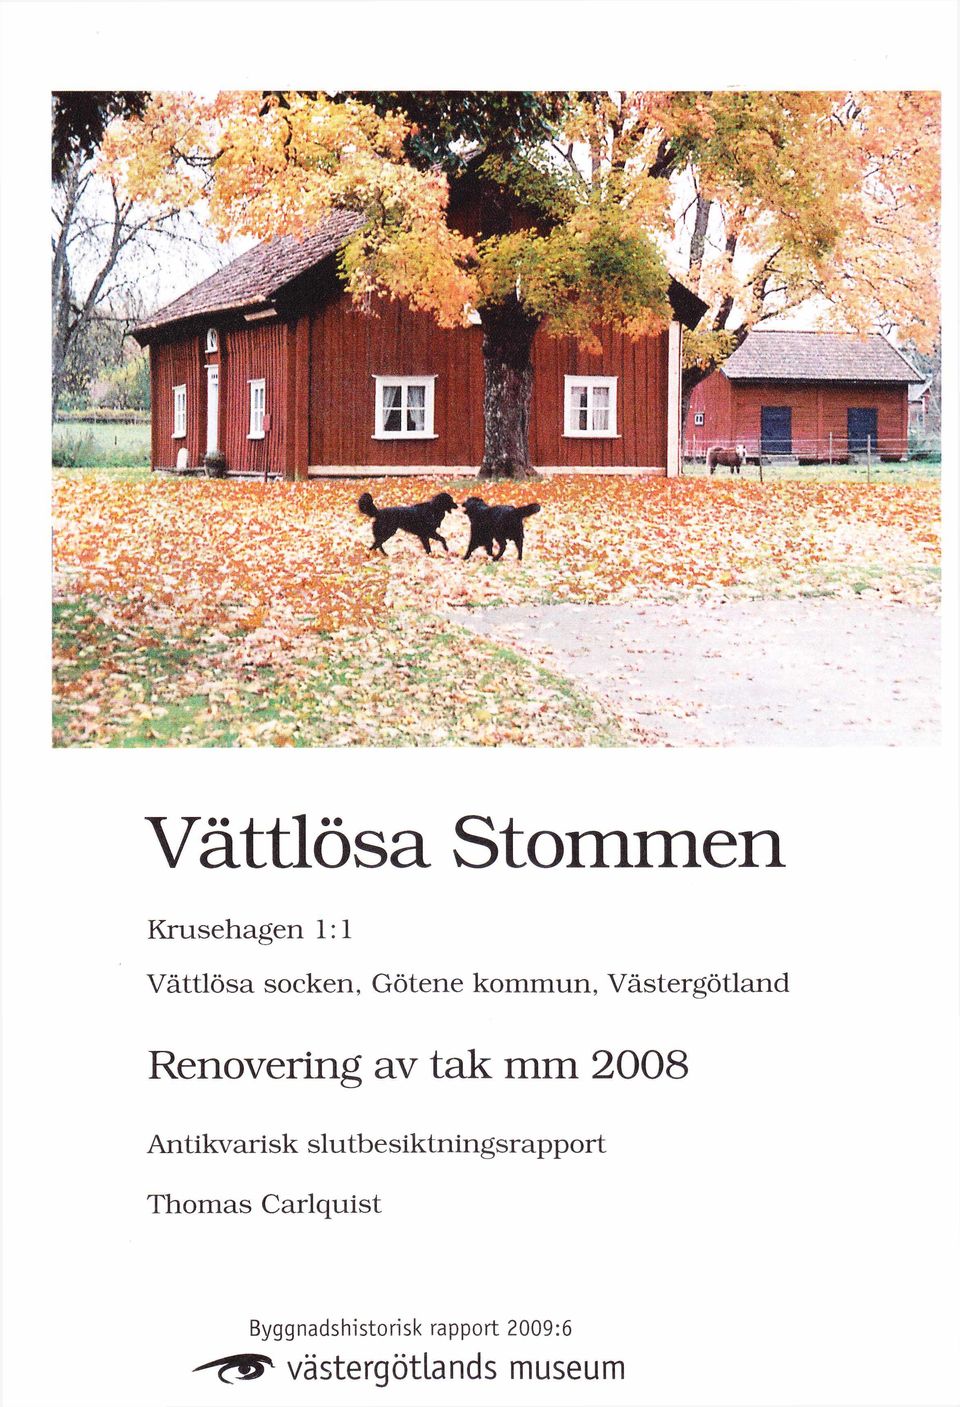 2008 A ntikvarisk slutbesiktningsrapport Thom as C